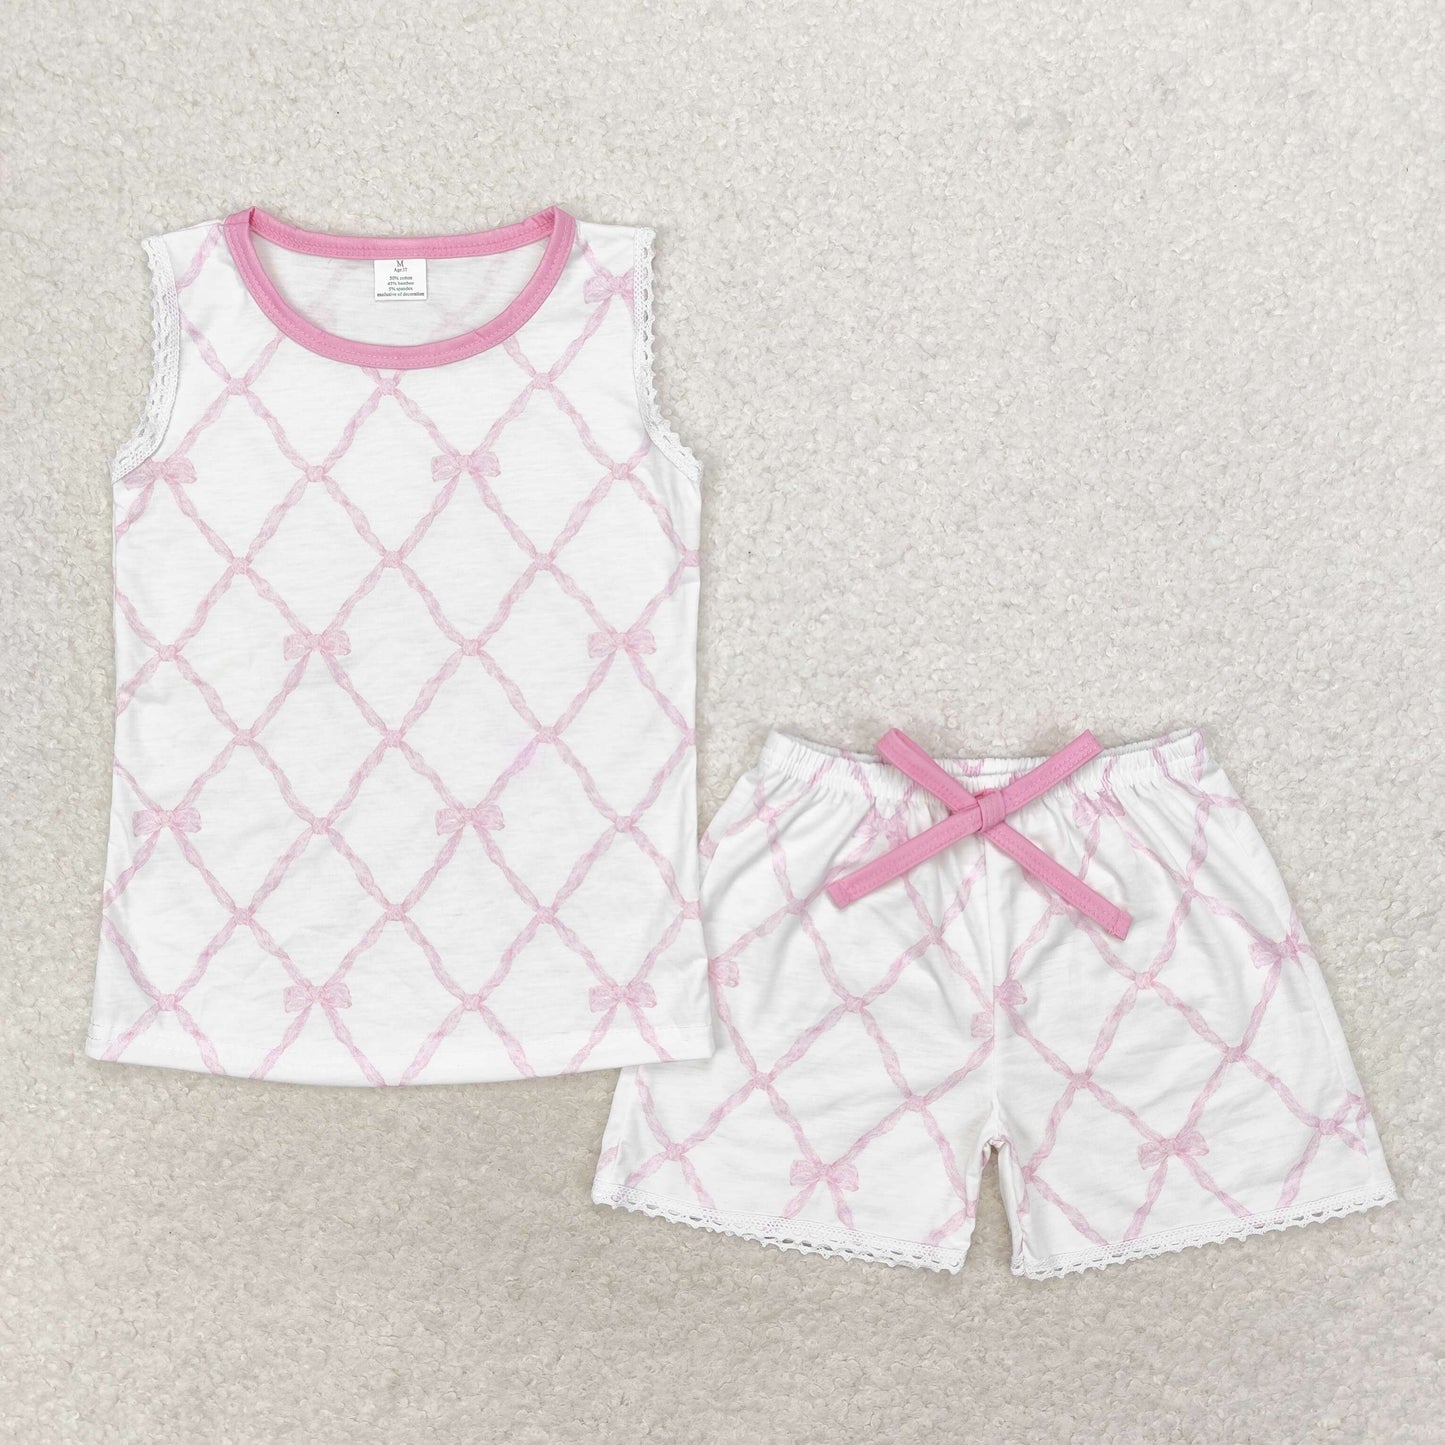 pink bows sibling clothes RTS